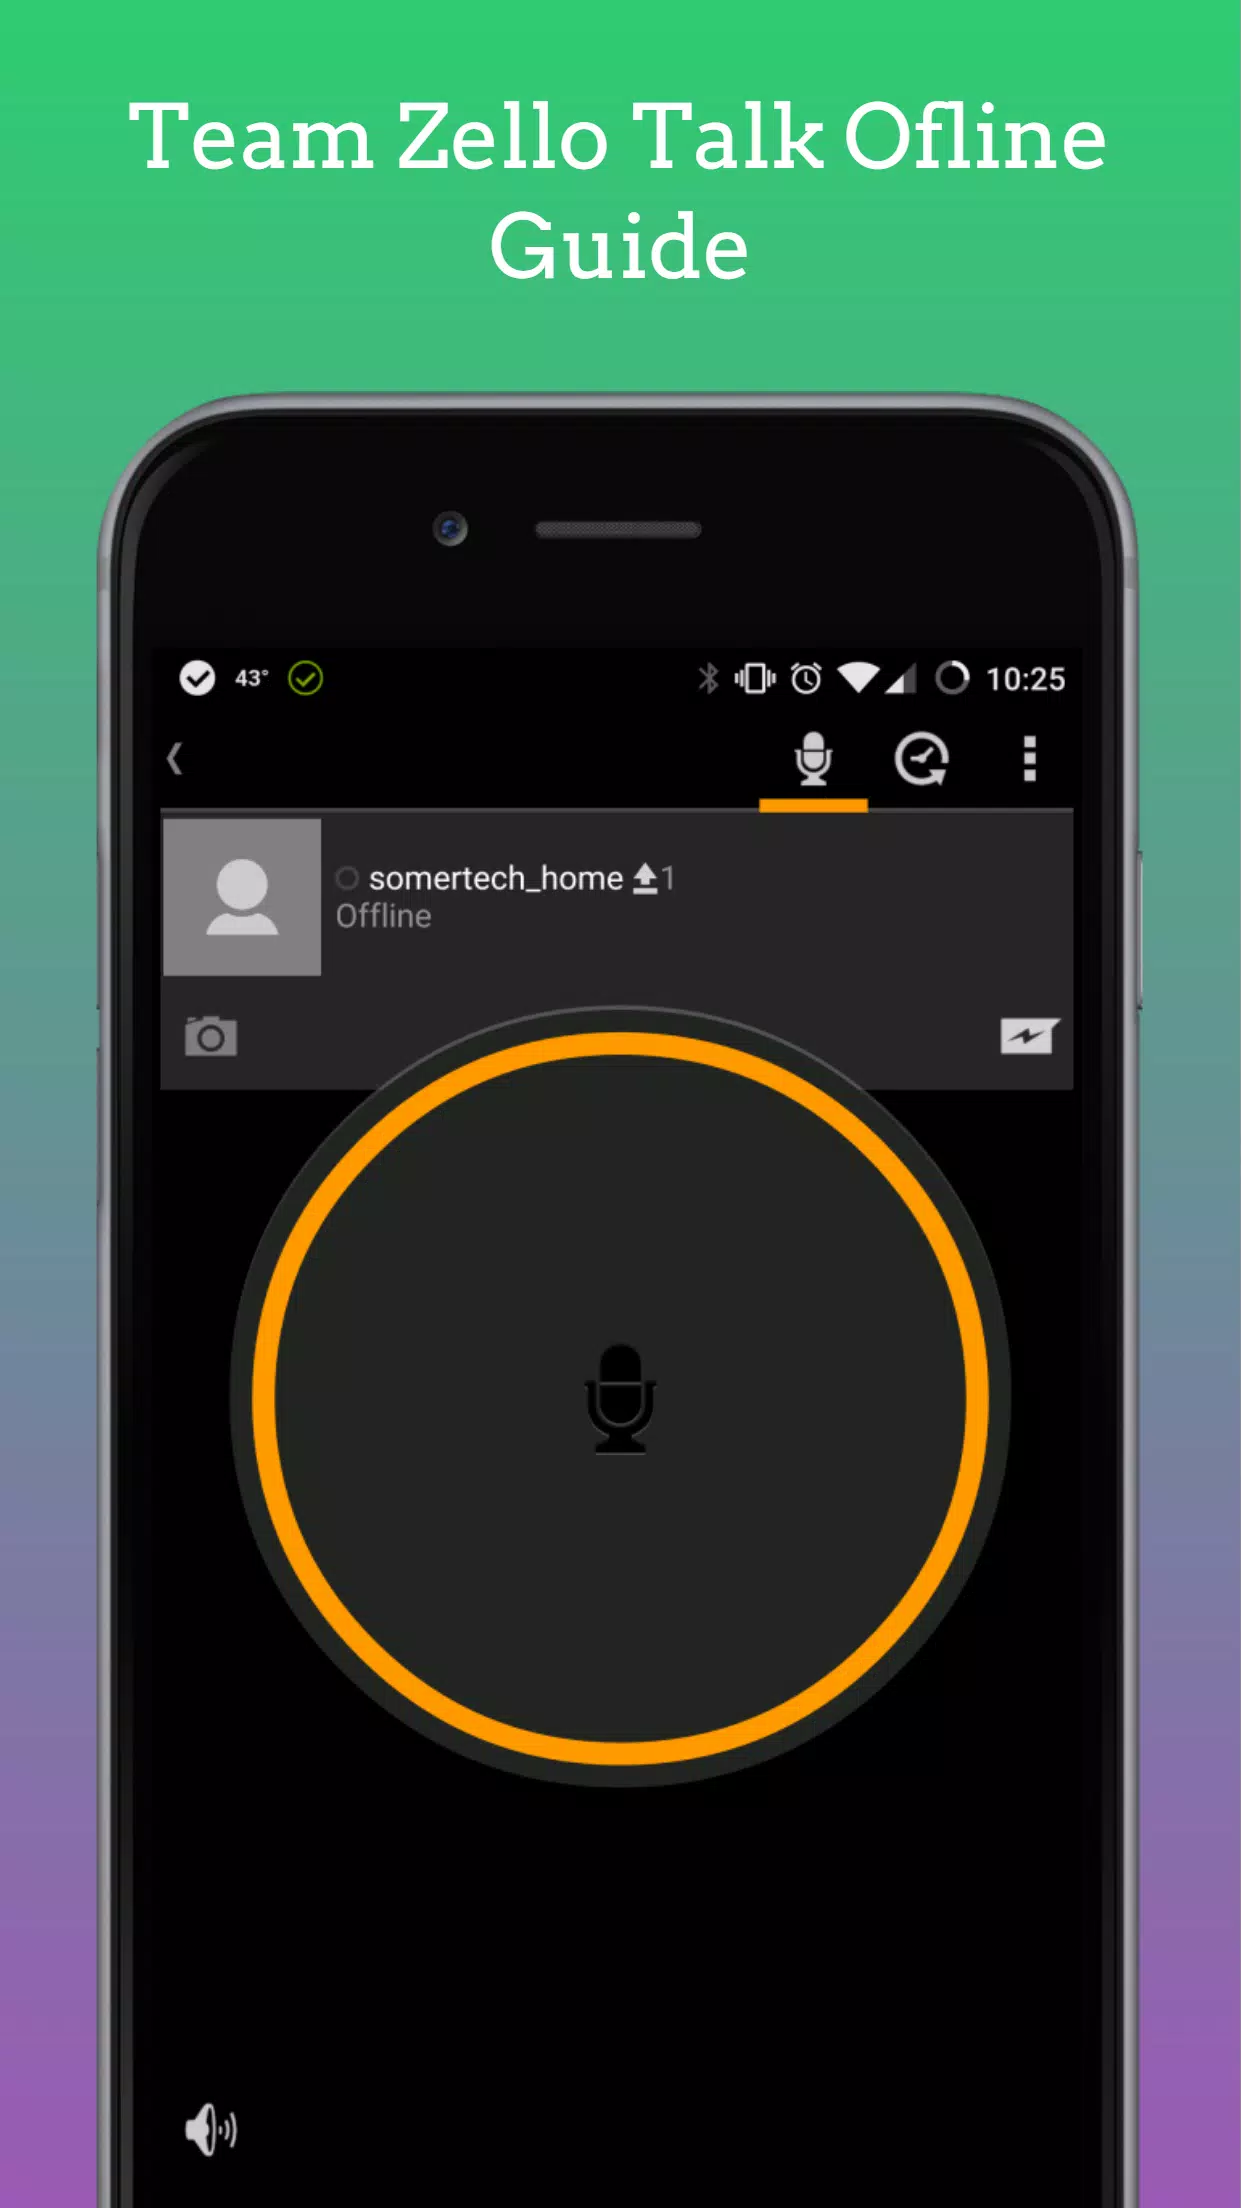 Descarga de APK de Team Zello Talk Ofline Guide para Android